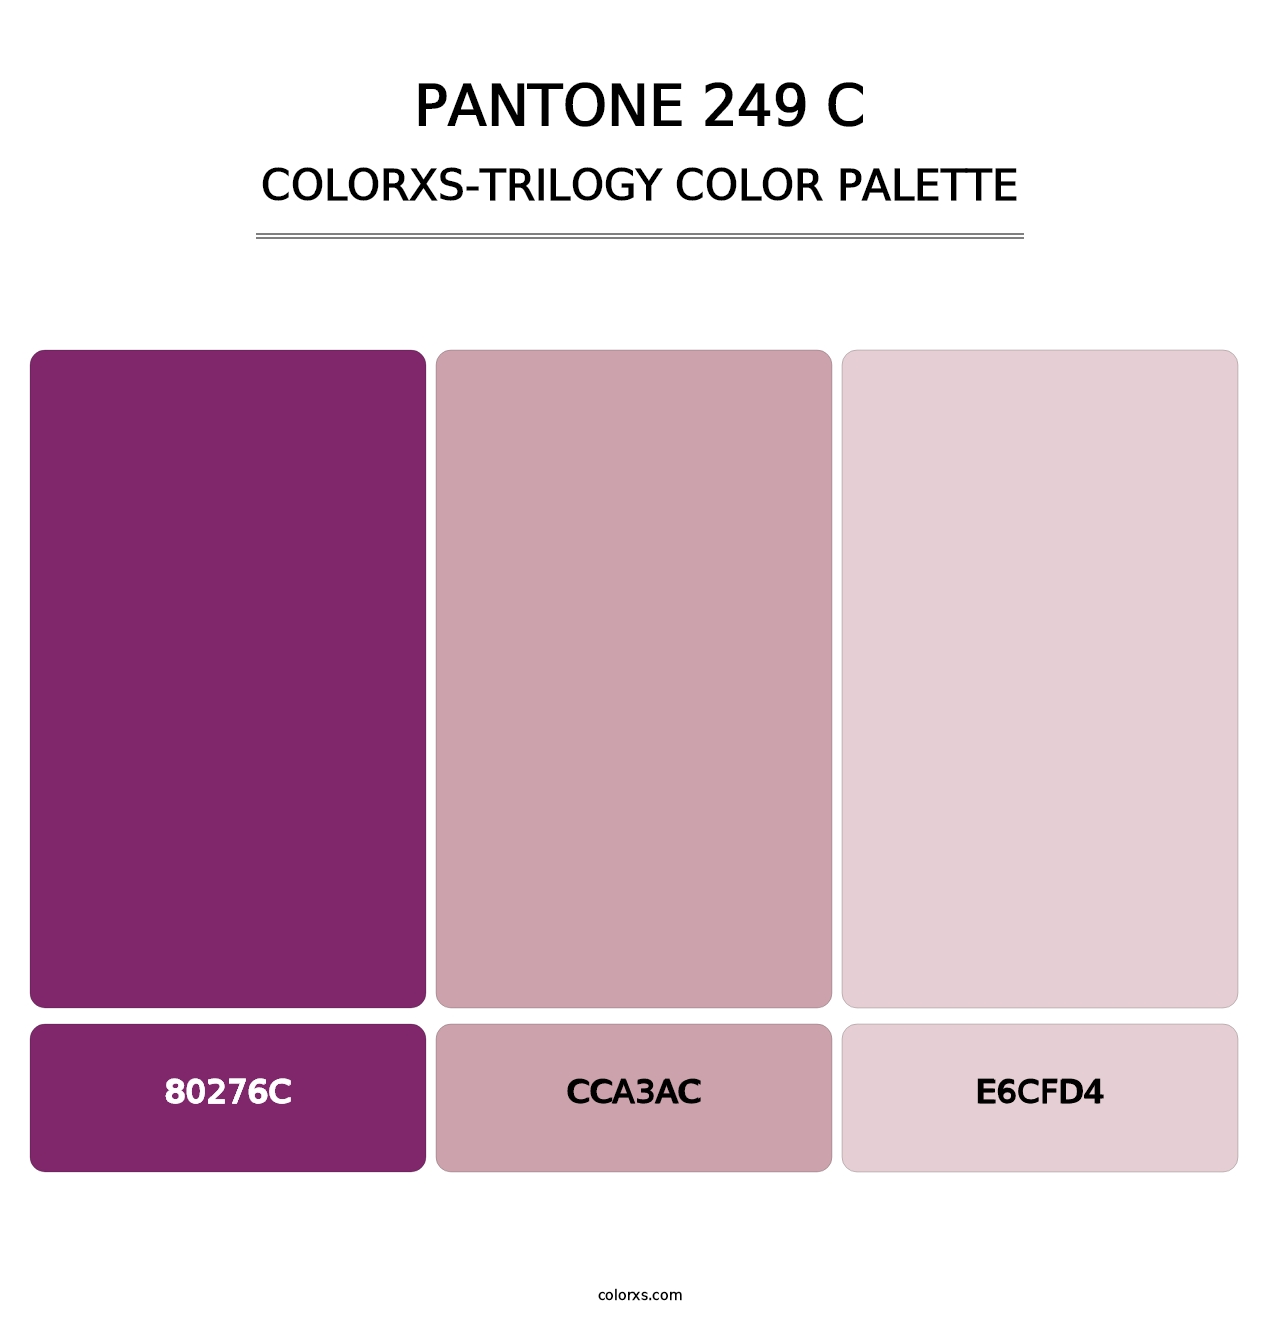 PANTONE 249 C - Colorxs Trilogy Palette